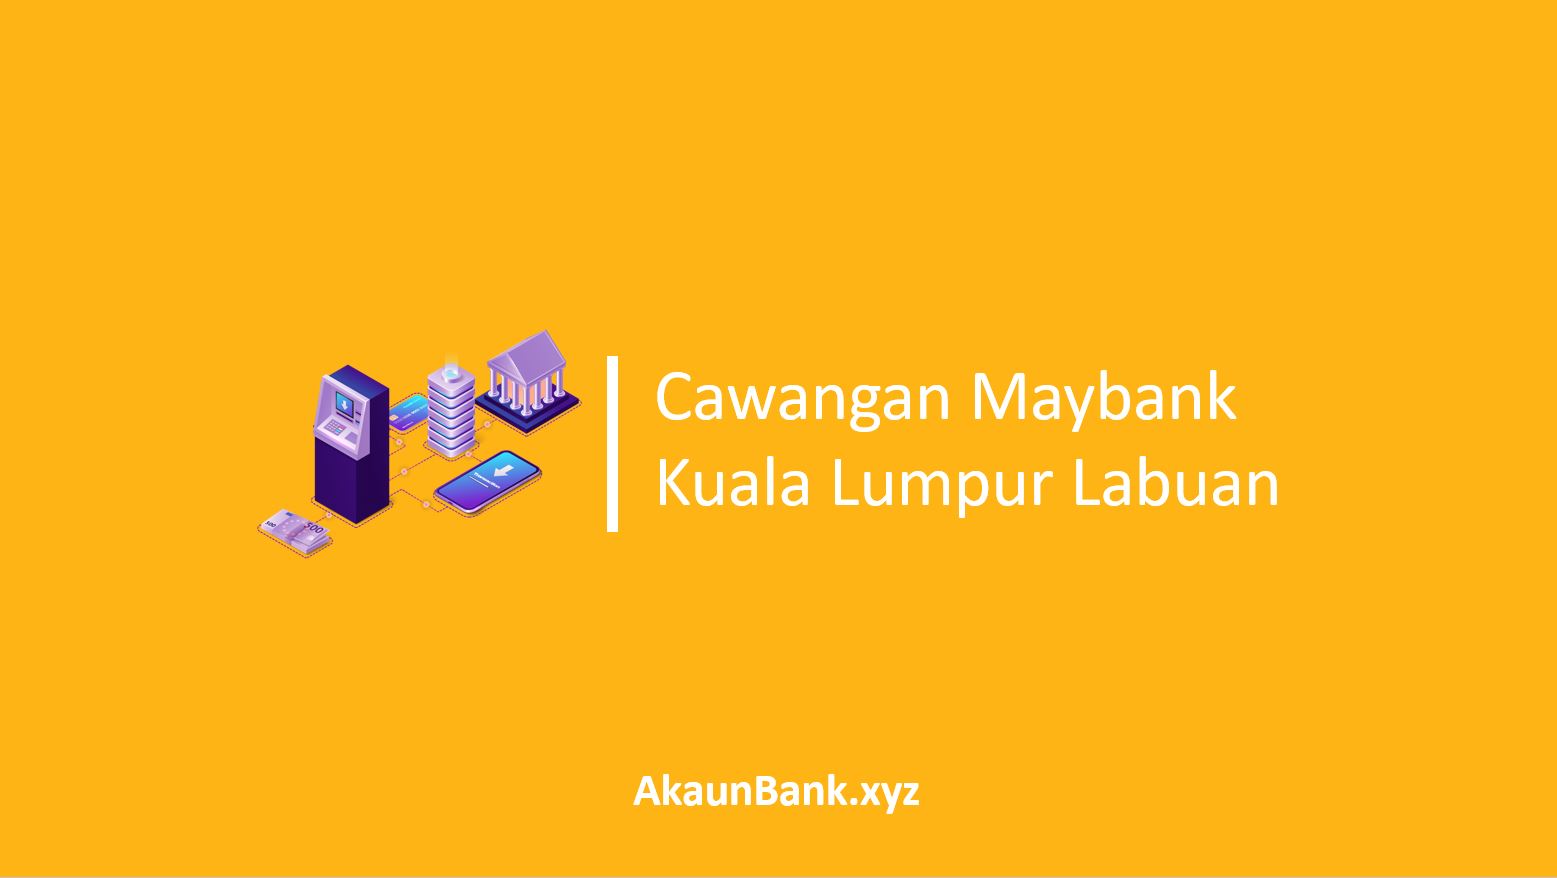 Cawangan Maybank Kuala Lumpur Labuan